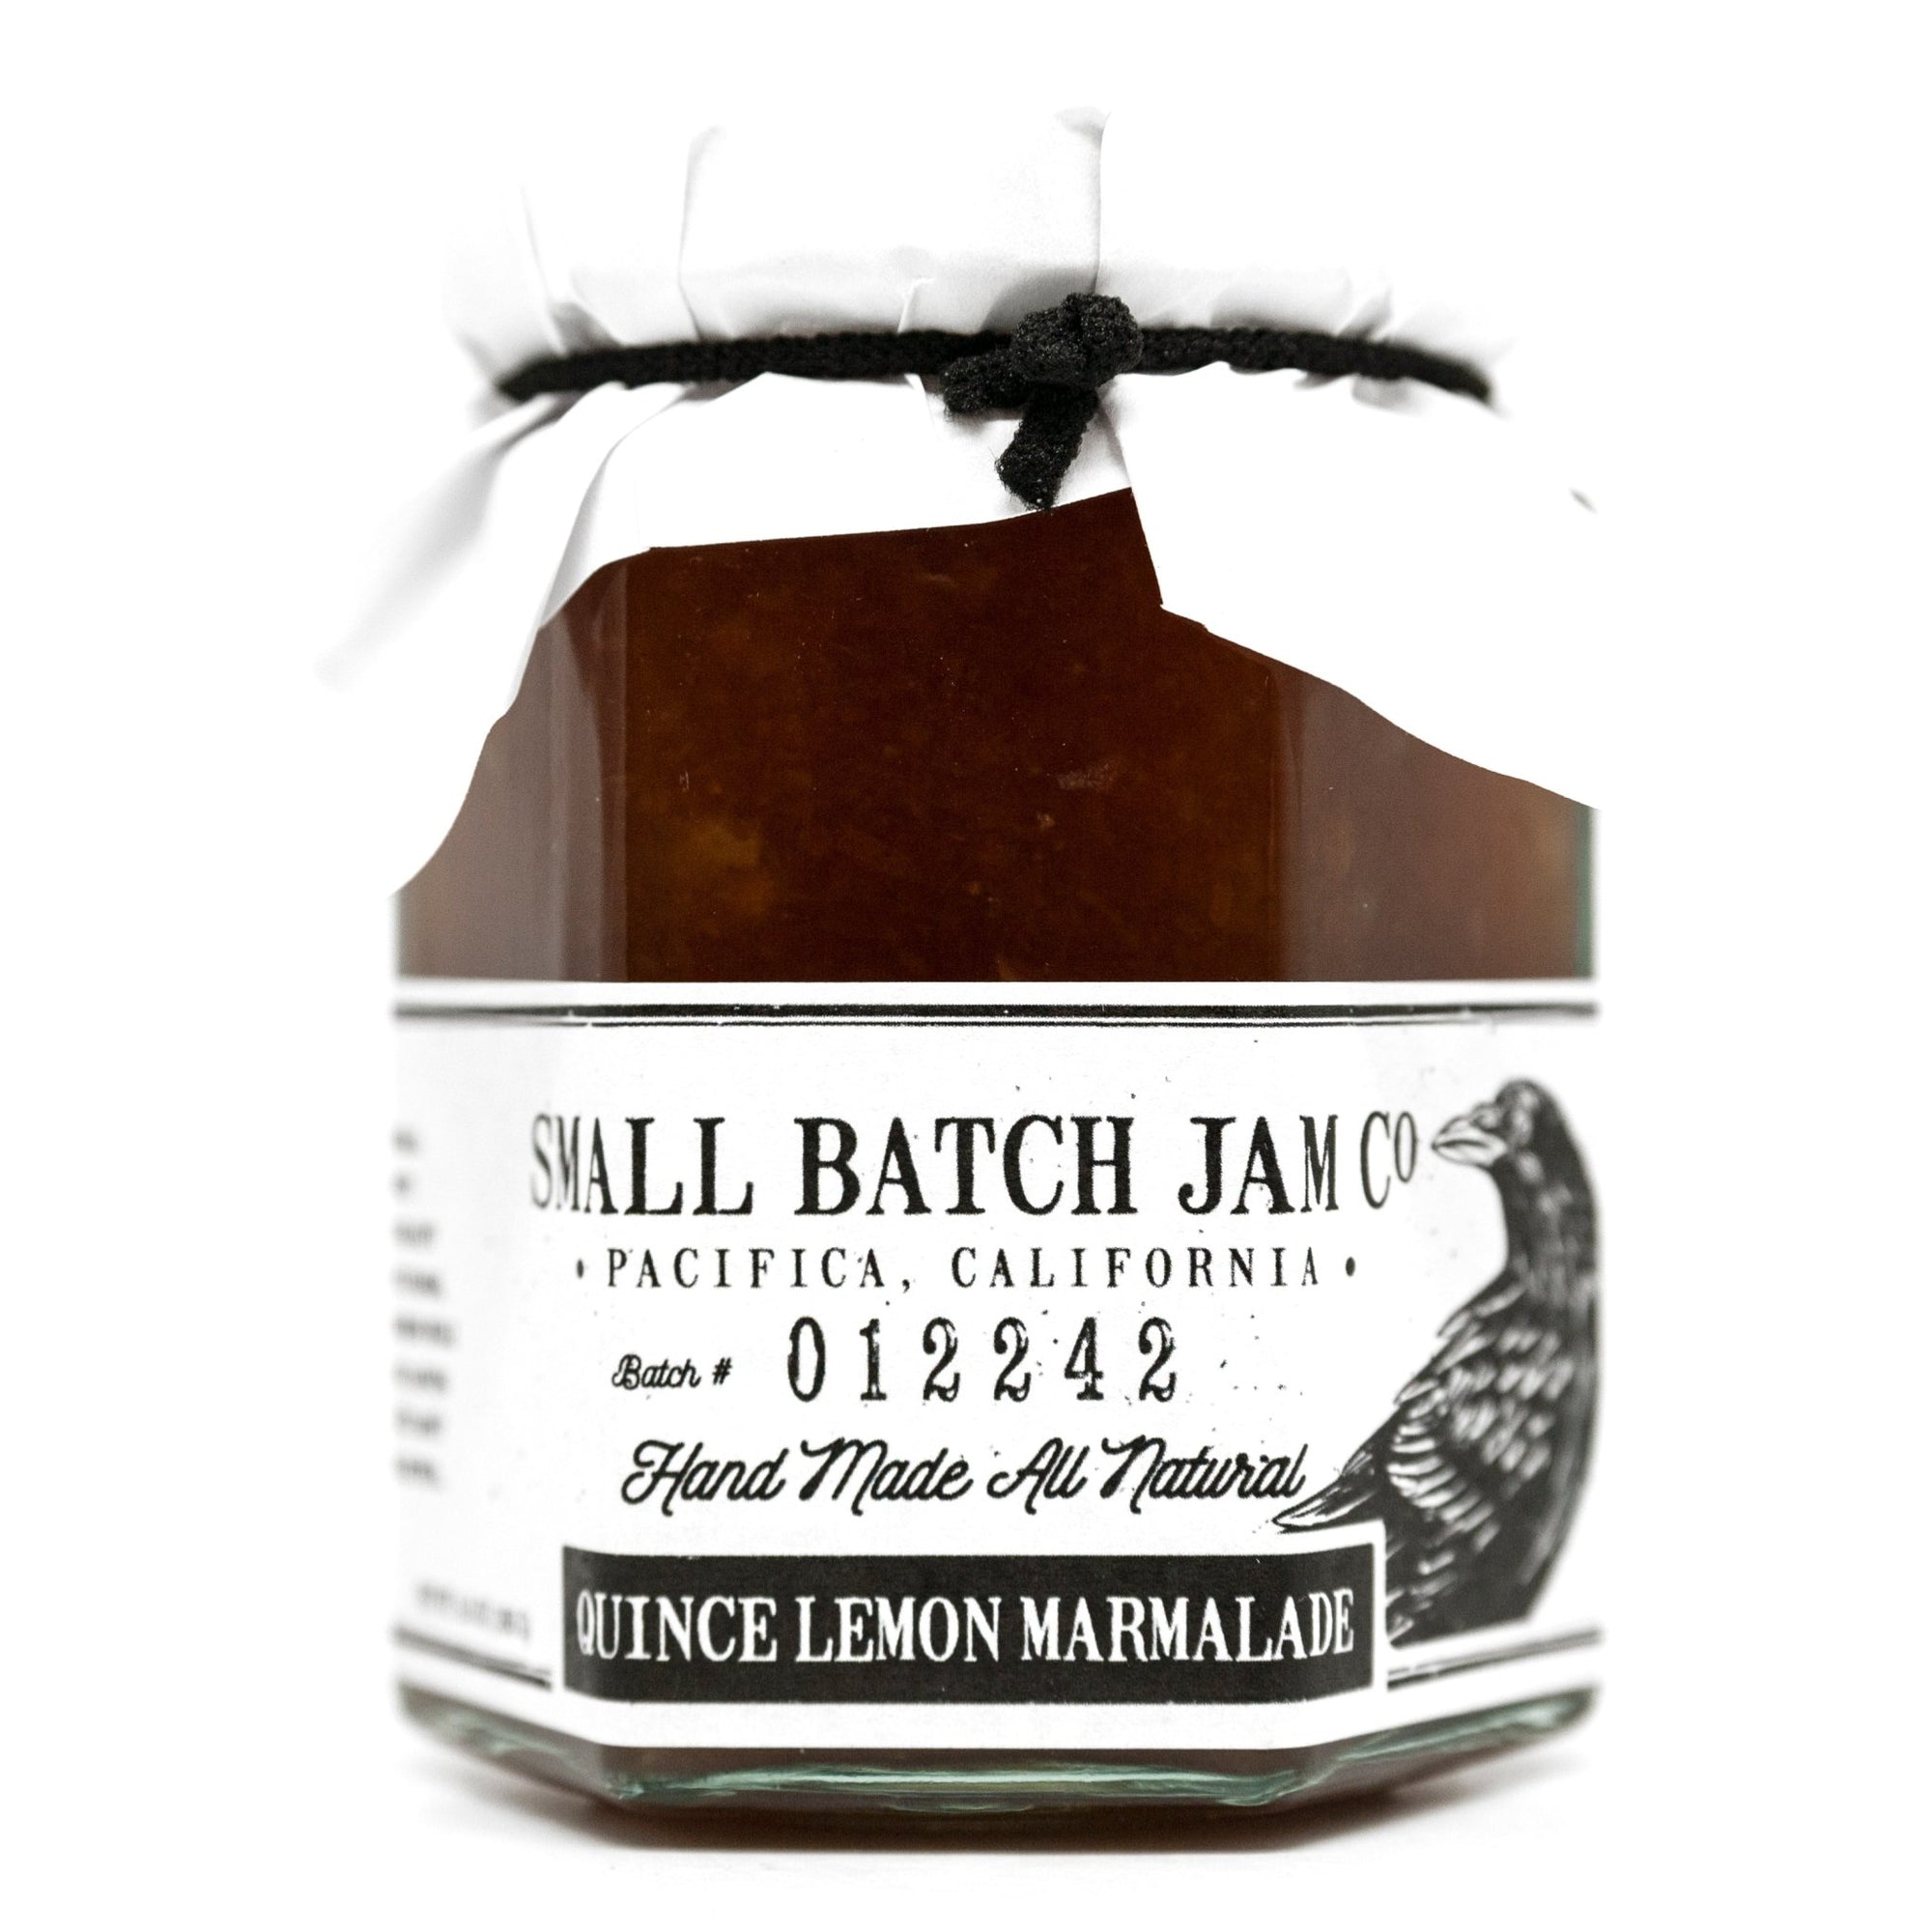 Quince Lemon Marmalade - Small Batch Jam Co